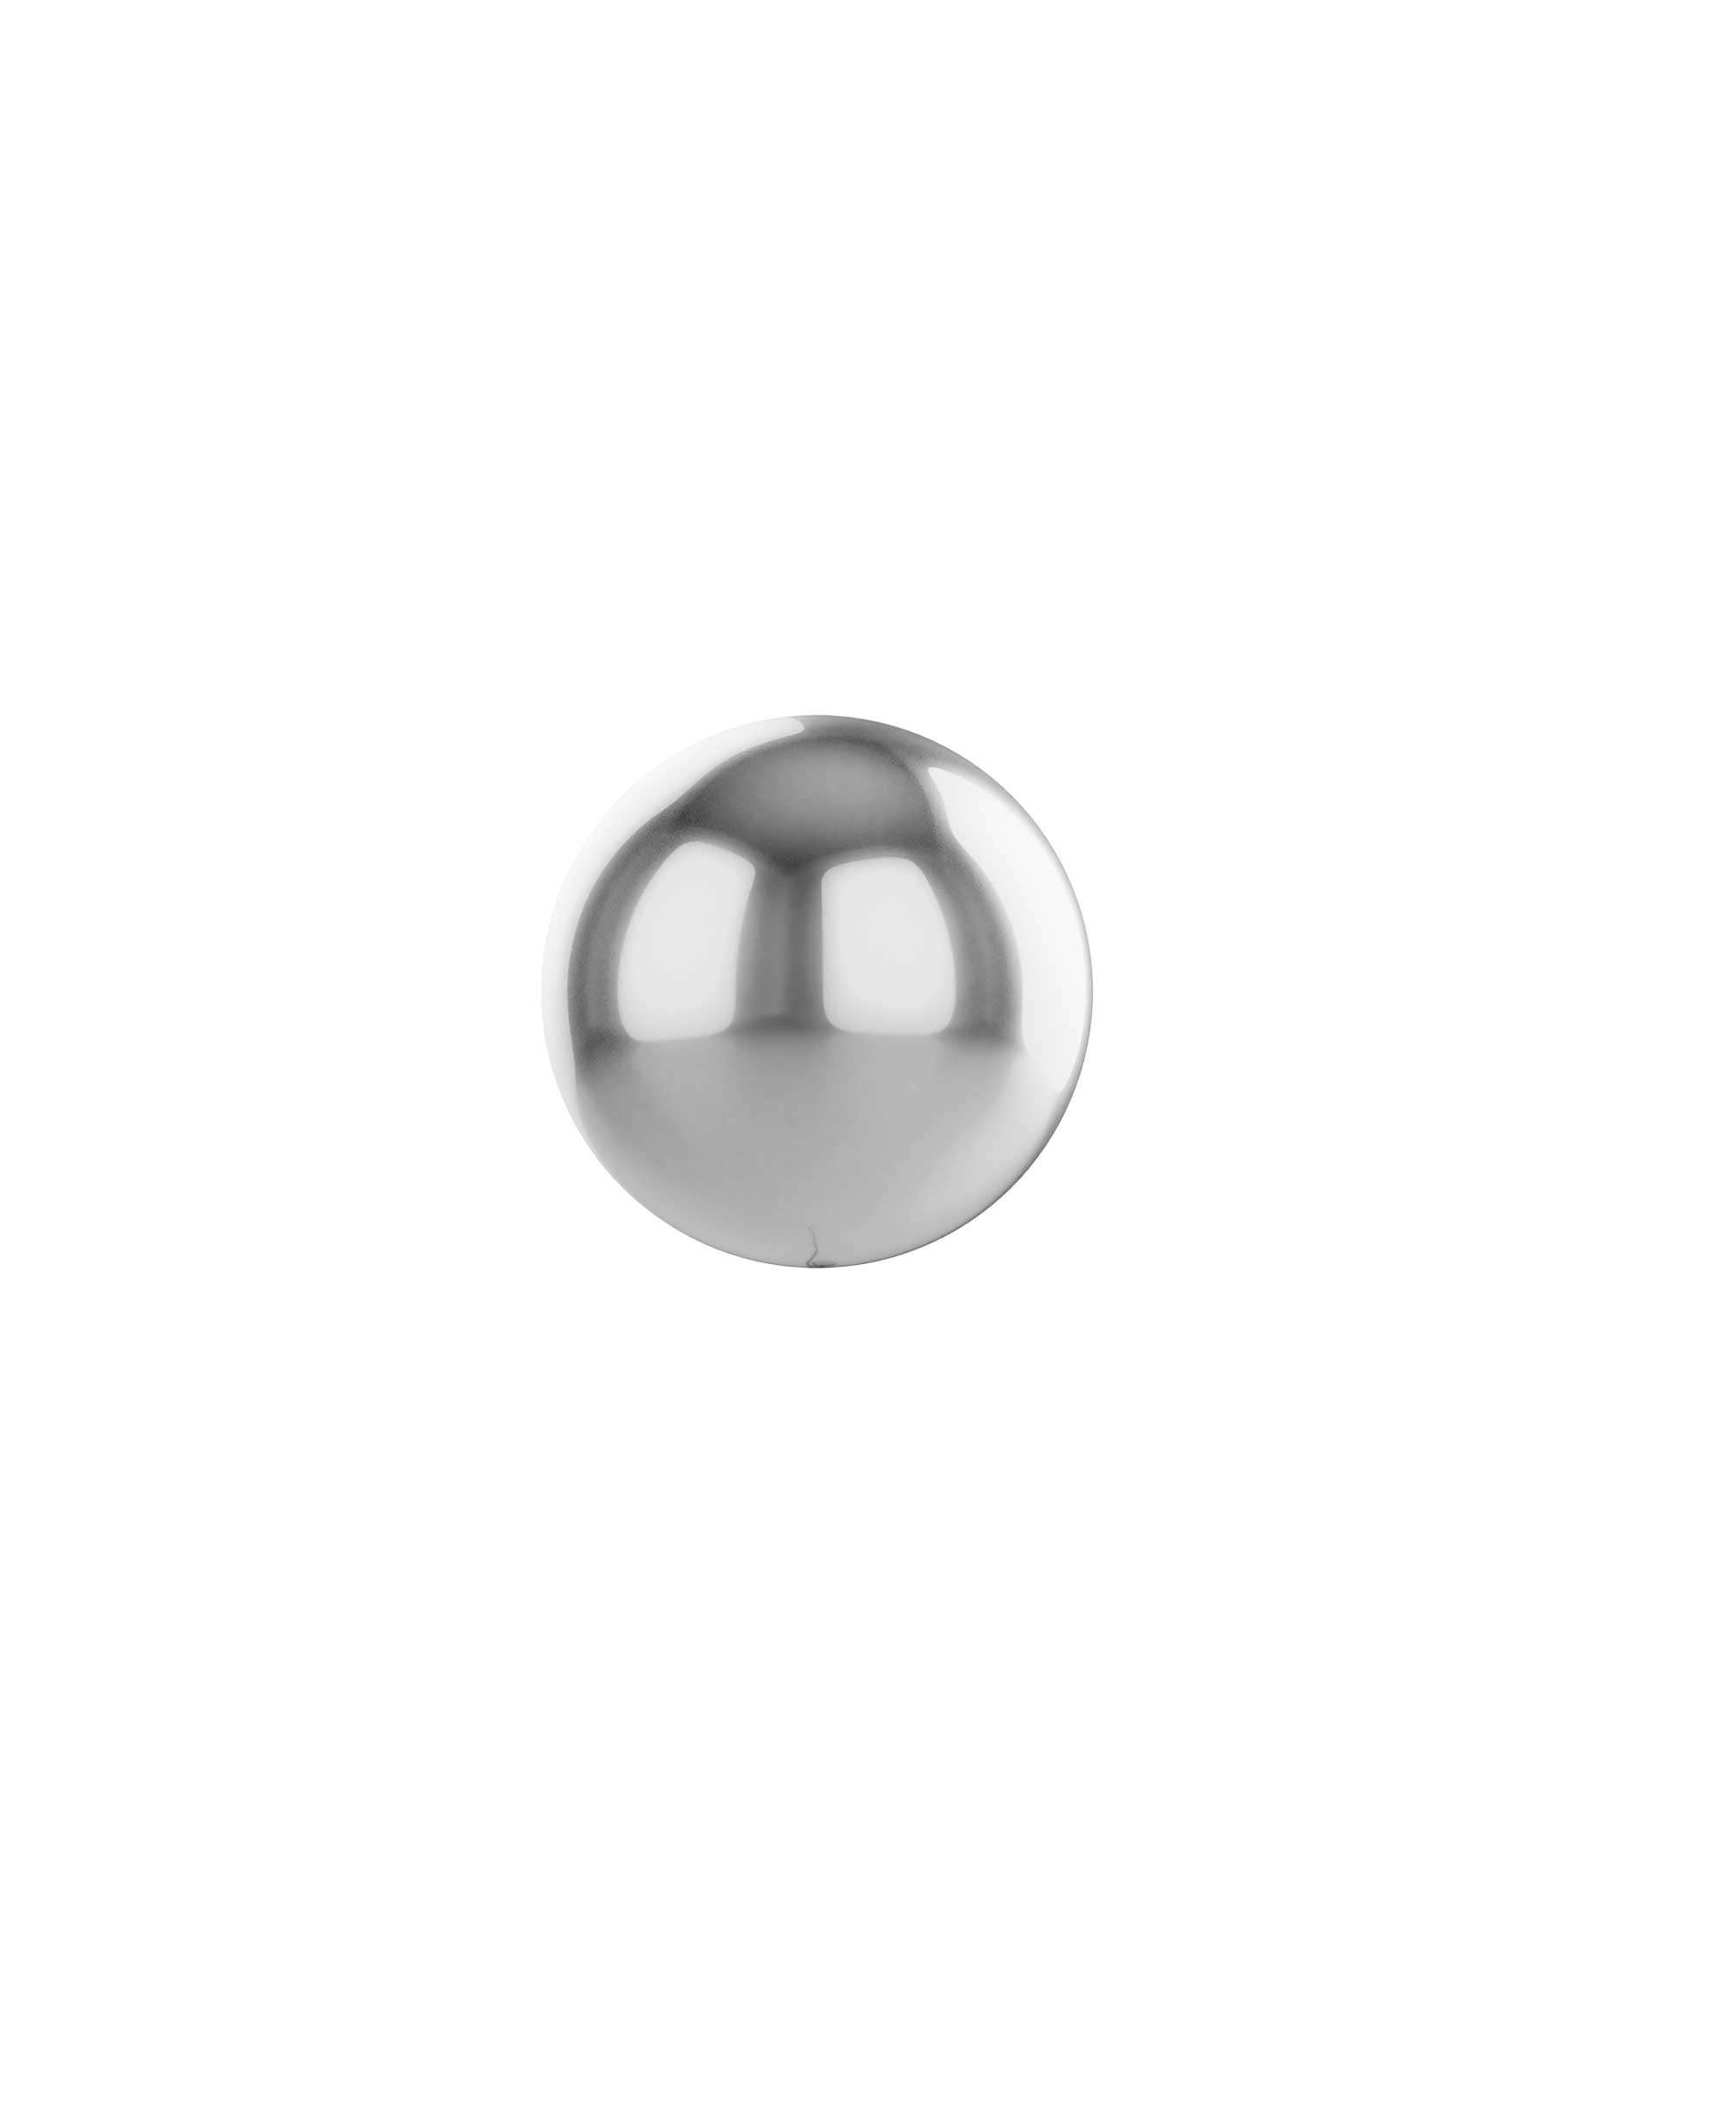 Silver balloon ball 10" - Gum nut Theme